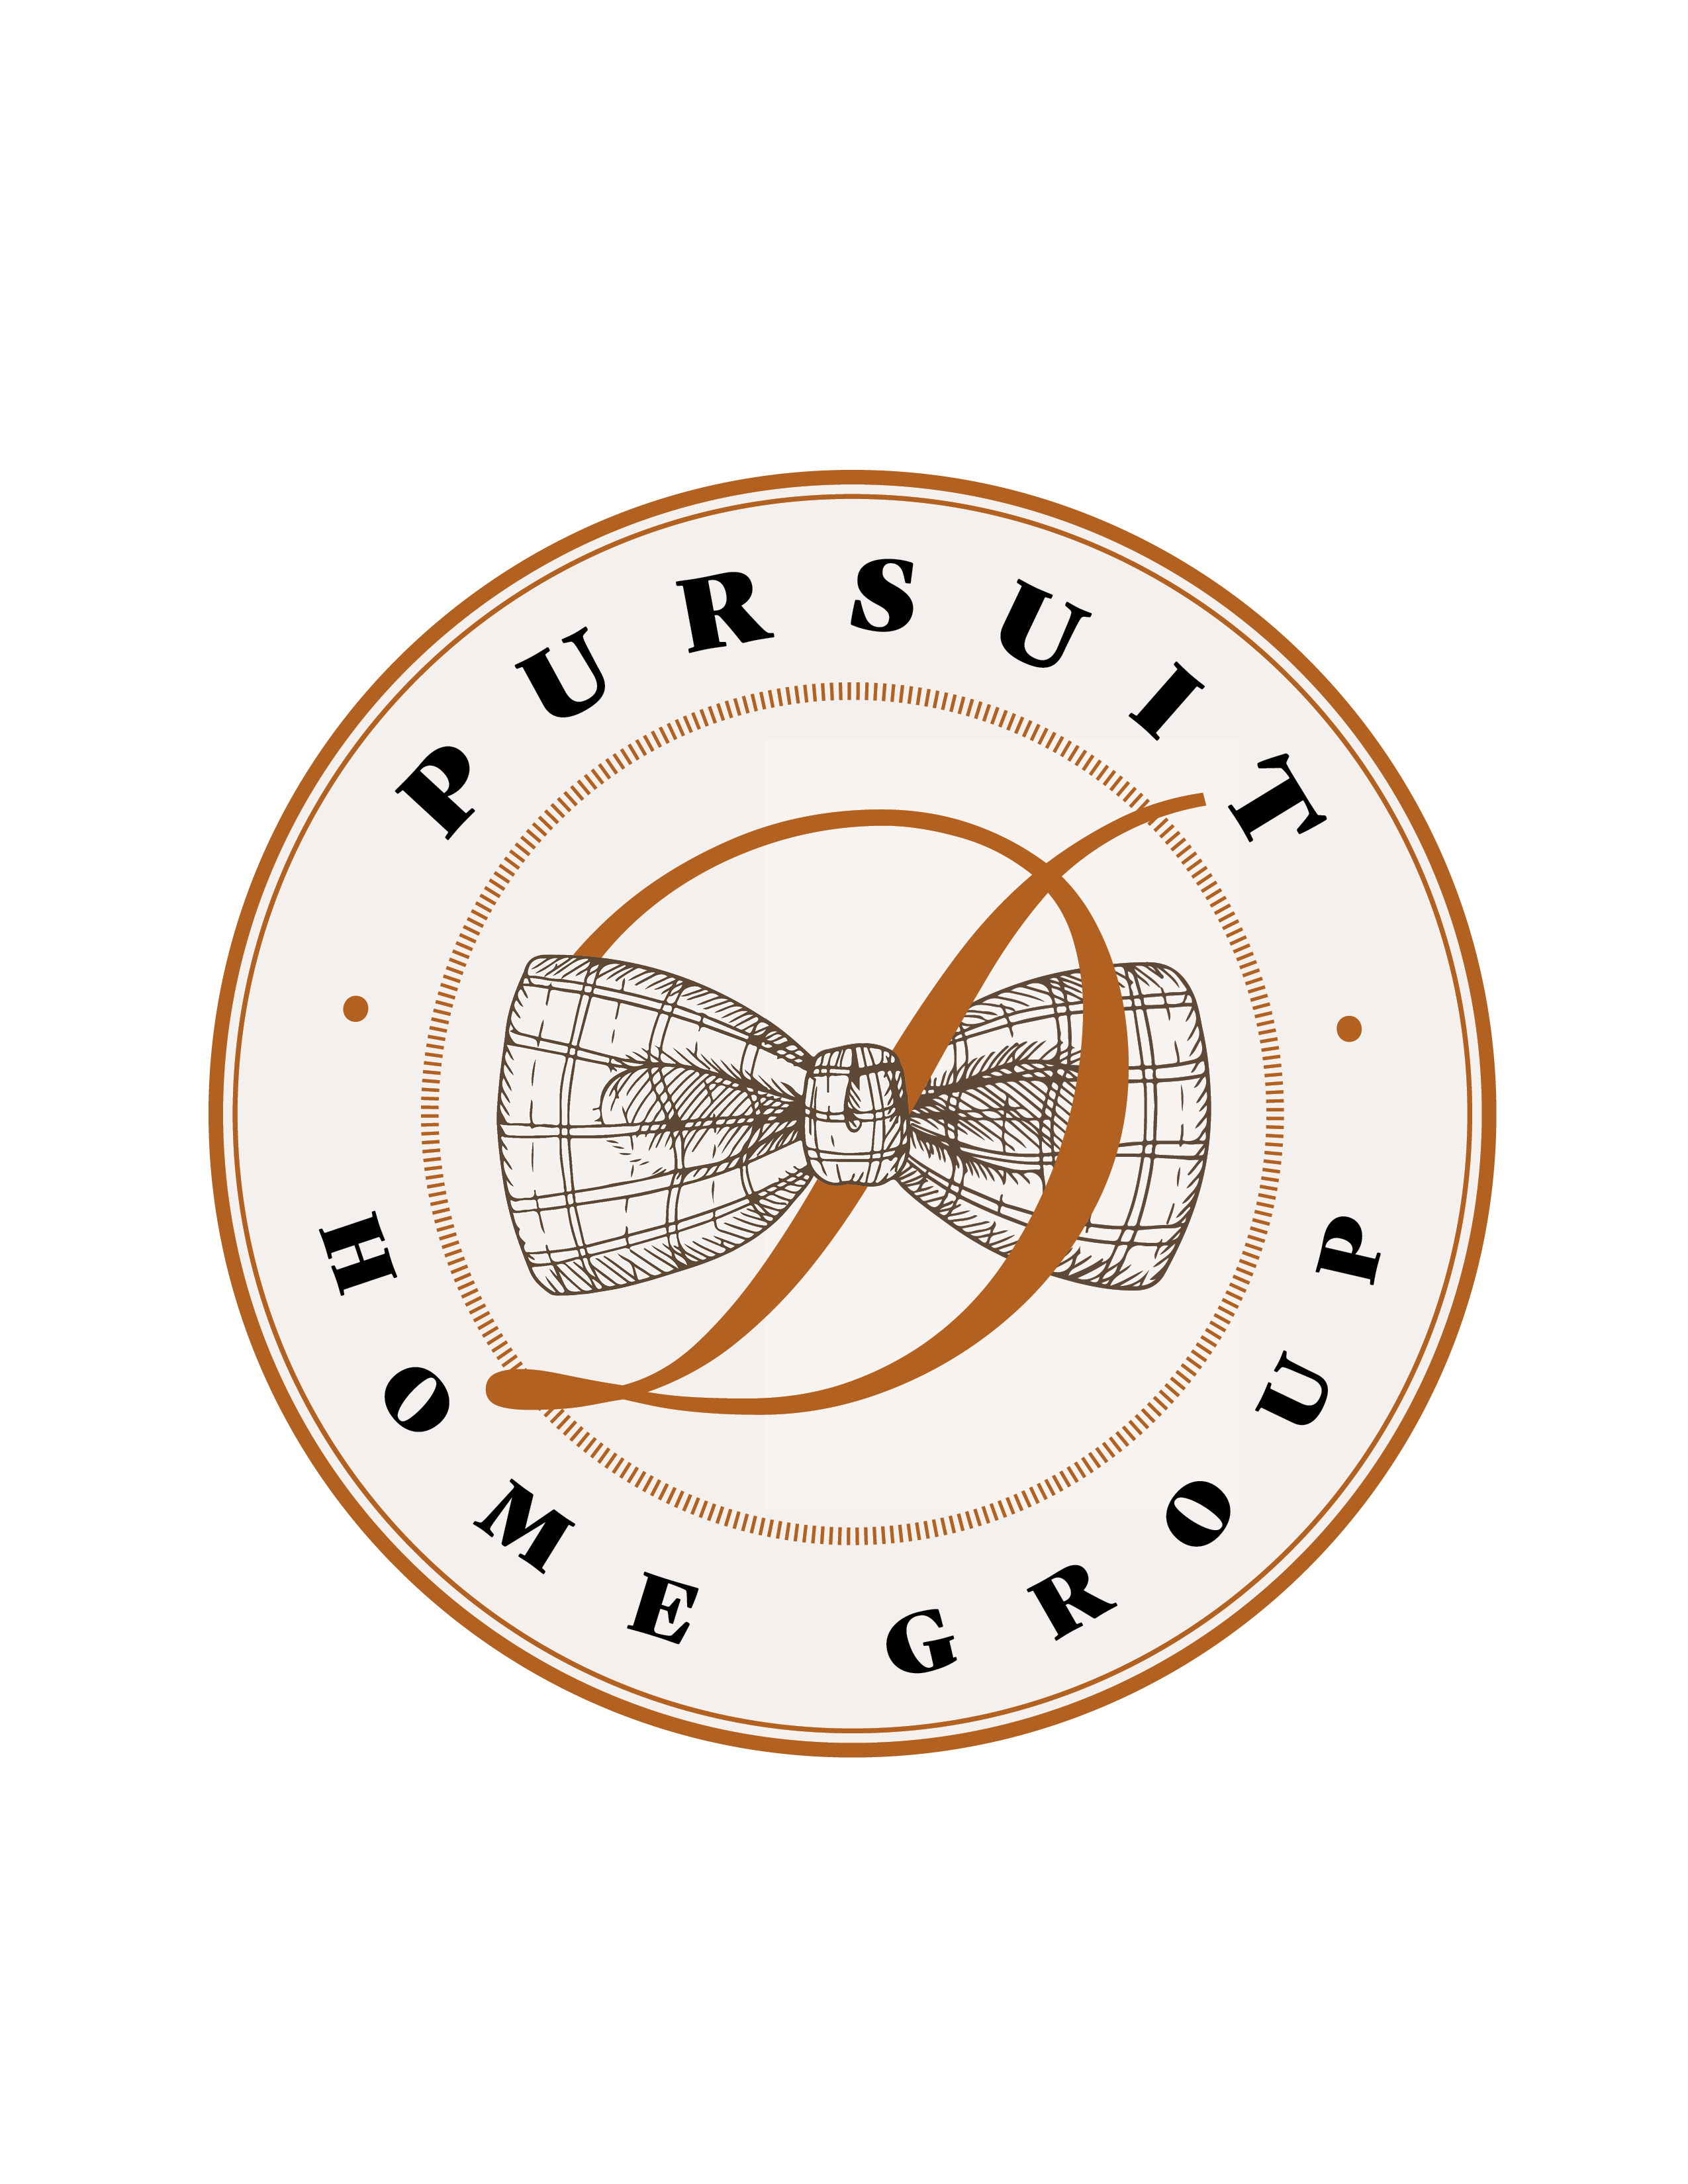 Pursuit Home Group (Platinum)